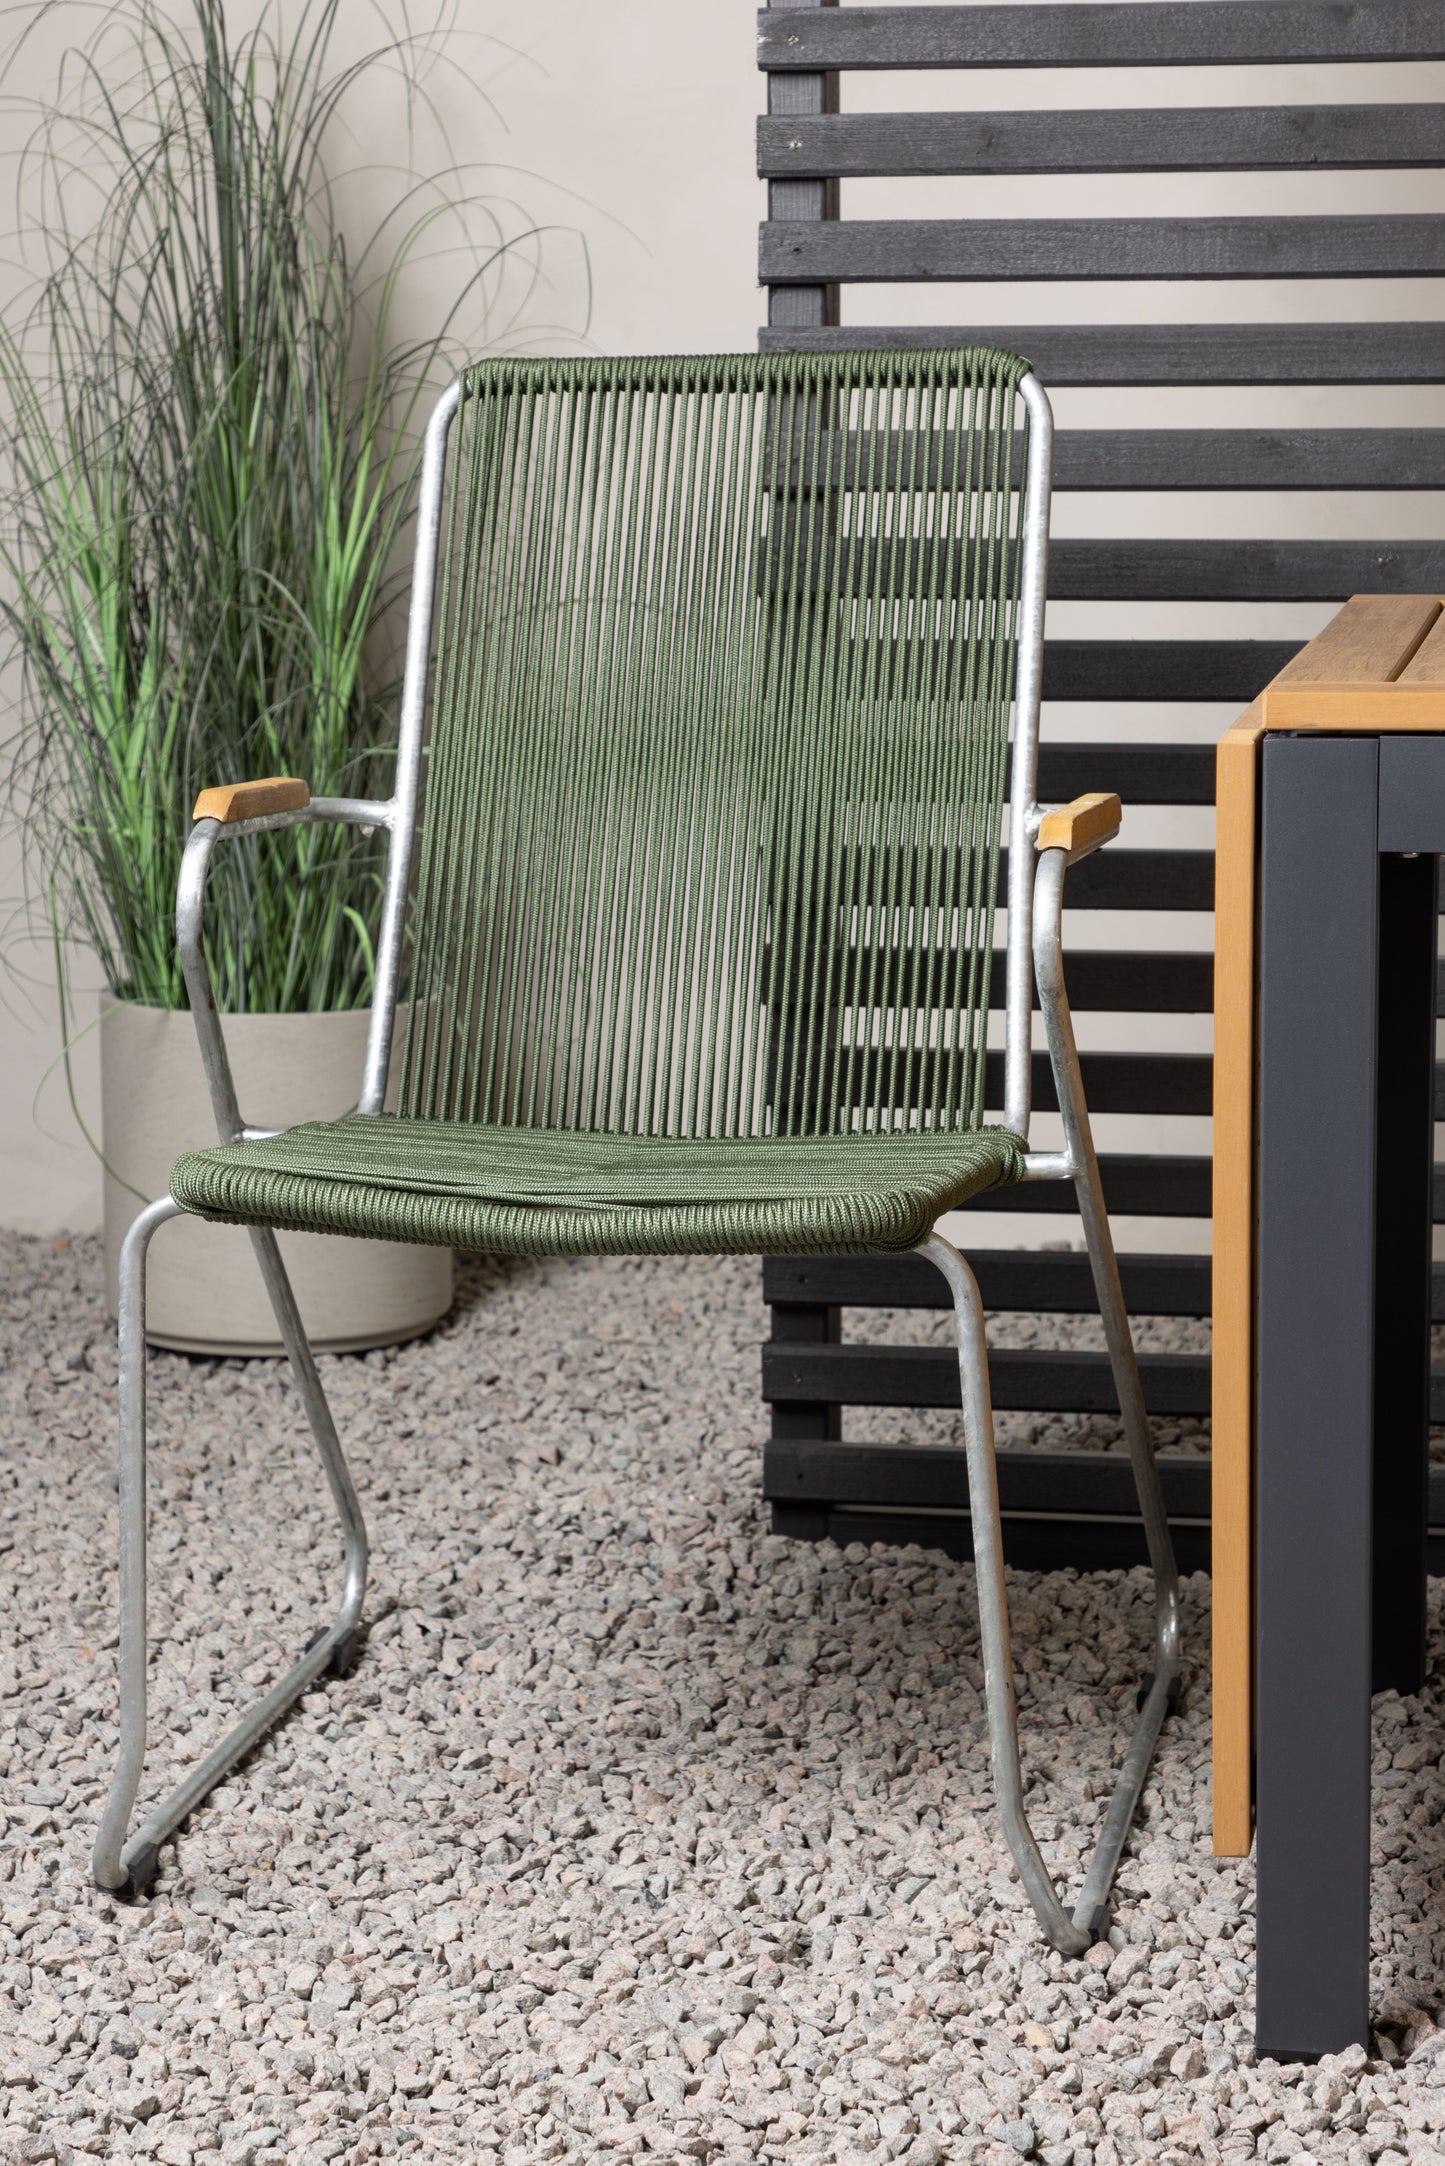 Diego - Cafébord, Aluminium - Sort / Brun Nonwood - Rektangulær 70*70/130* + Bois stol Stål - Sølv / Grønt Reb